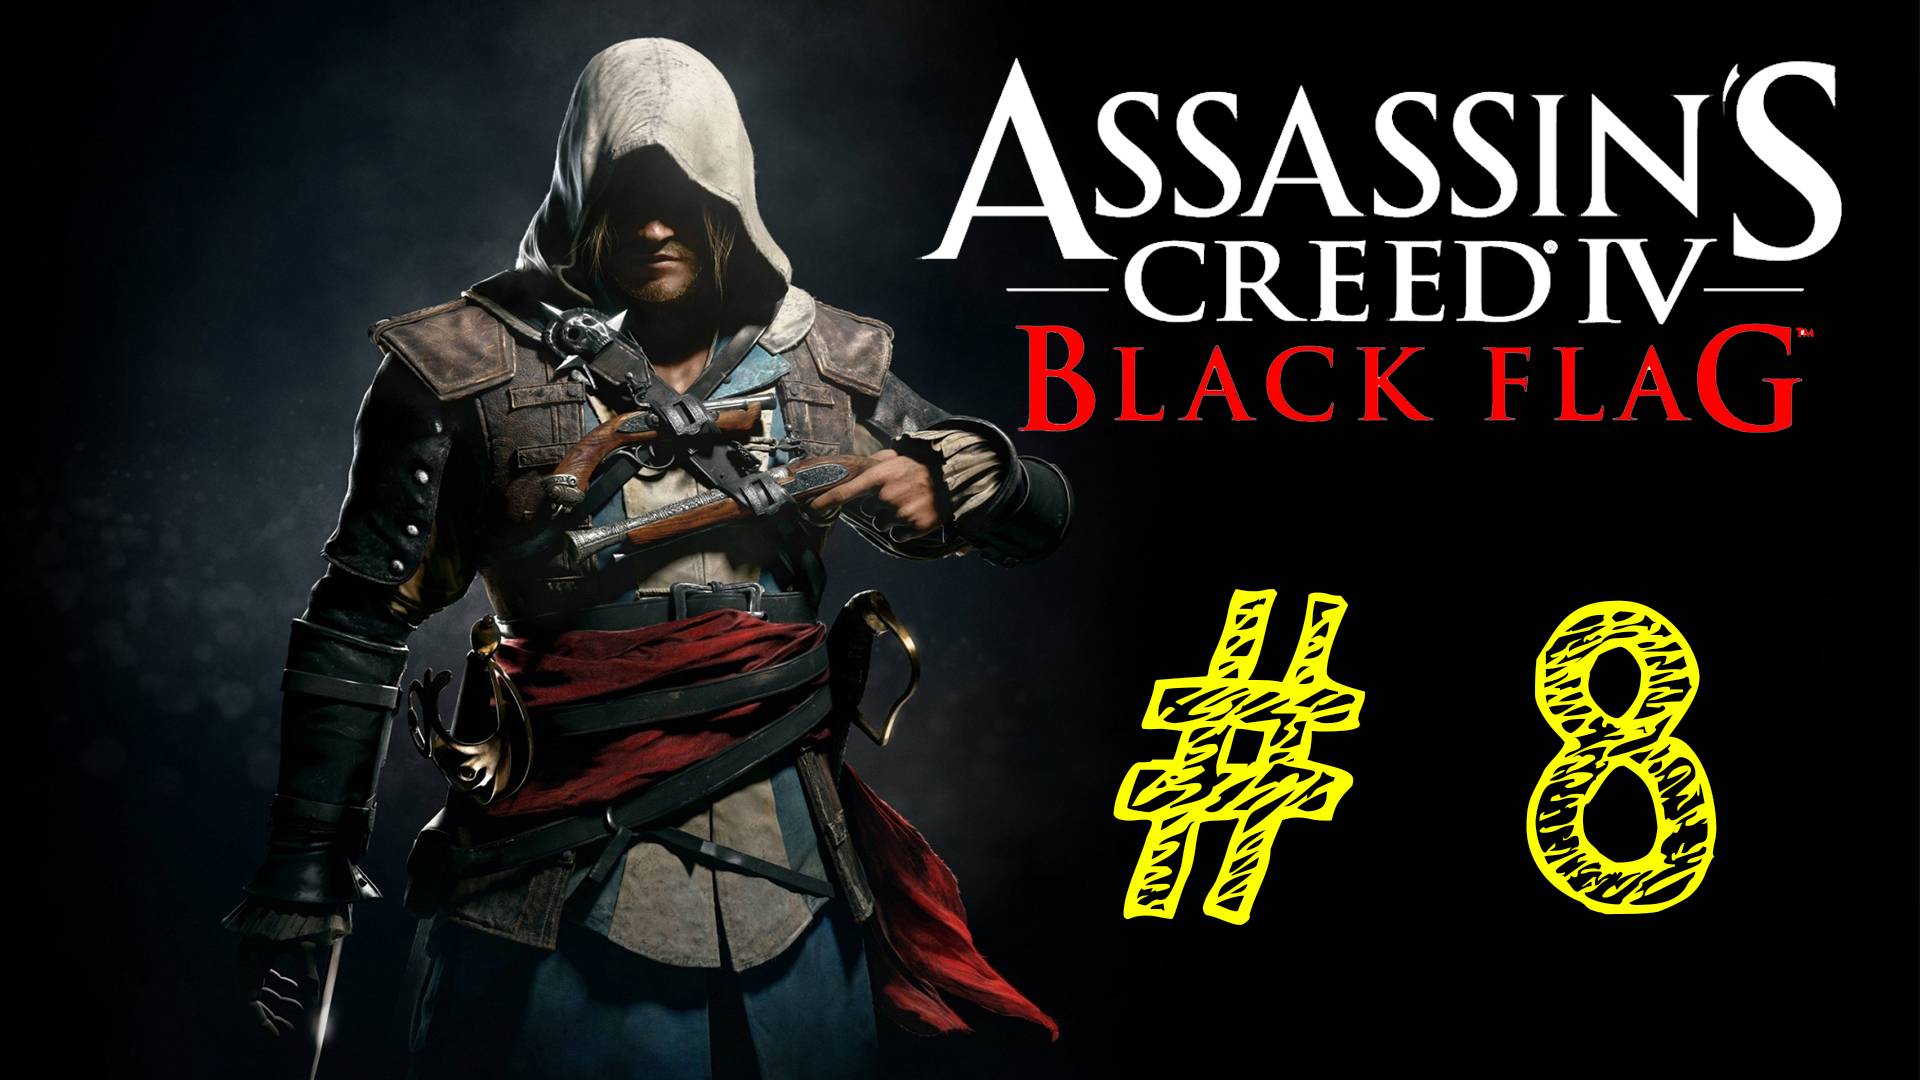 Assassin's Creed IV Black Flag. Ассасин черный флаг. 8 выпуск. ВЕК ПИРАТСТВА. Прохождение компании